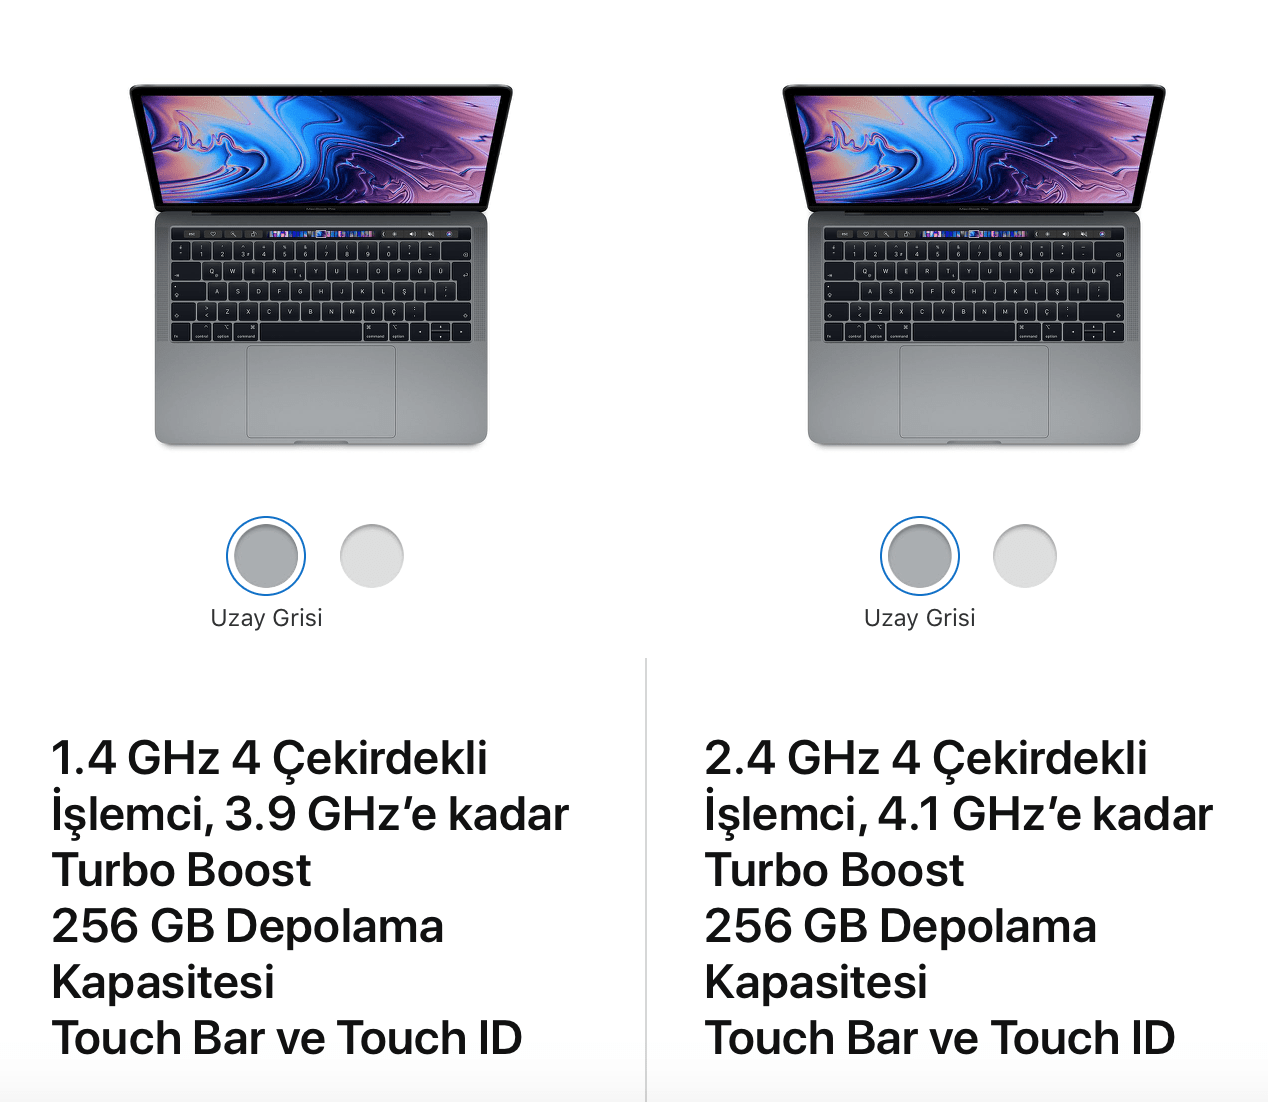 İki MacBook Pro arasındaki işlemci farkı önemli mi? | Technopat Sosyal